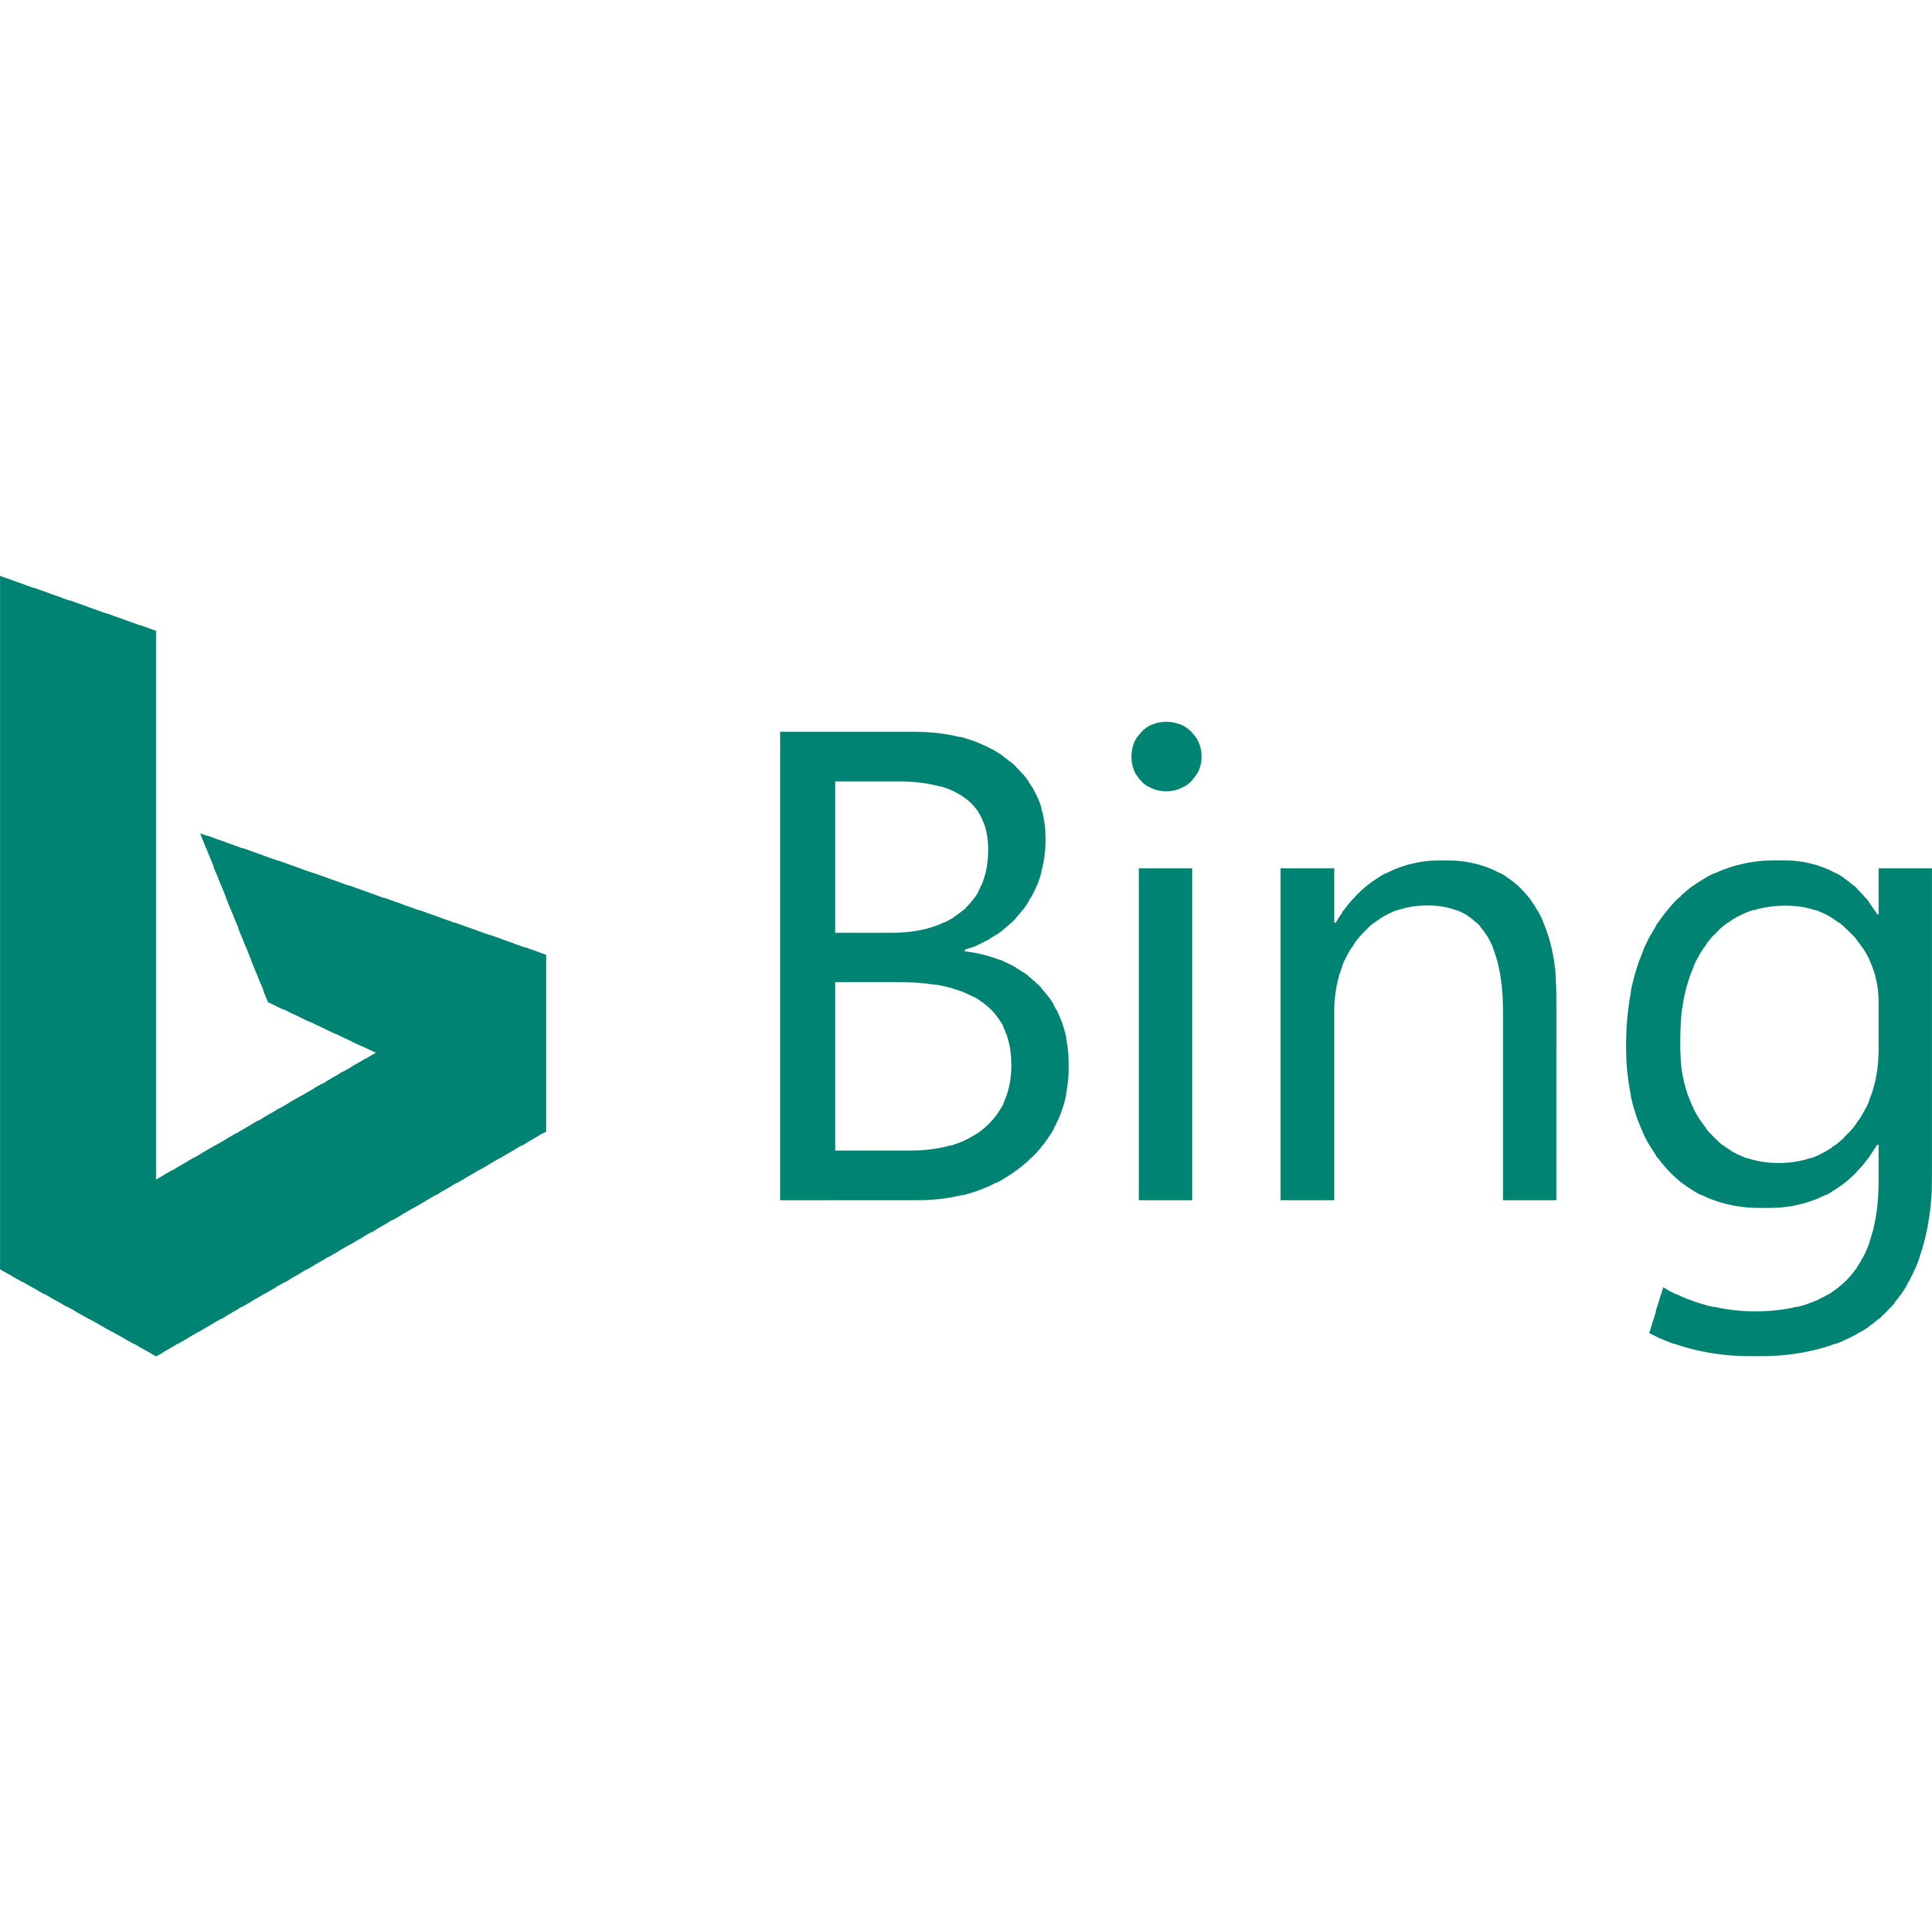 Bing Logo Transparent Image